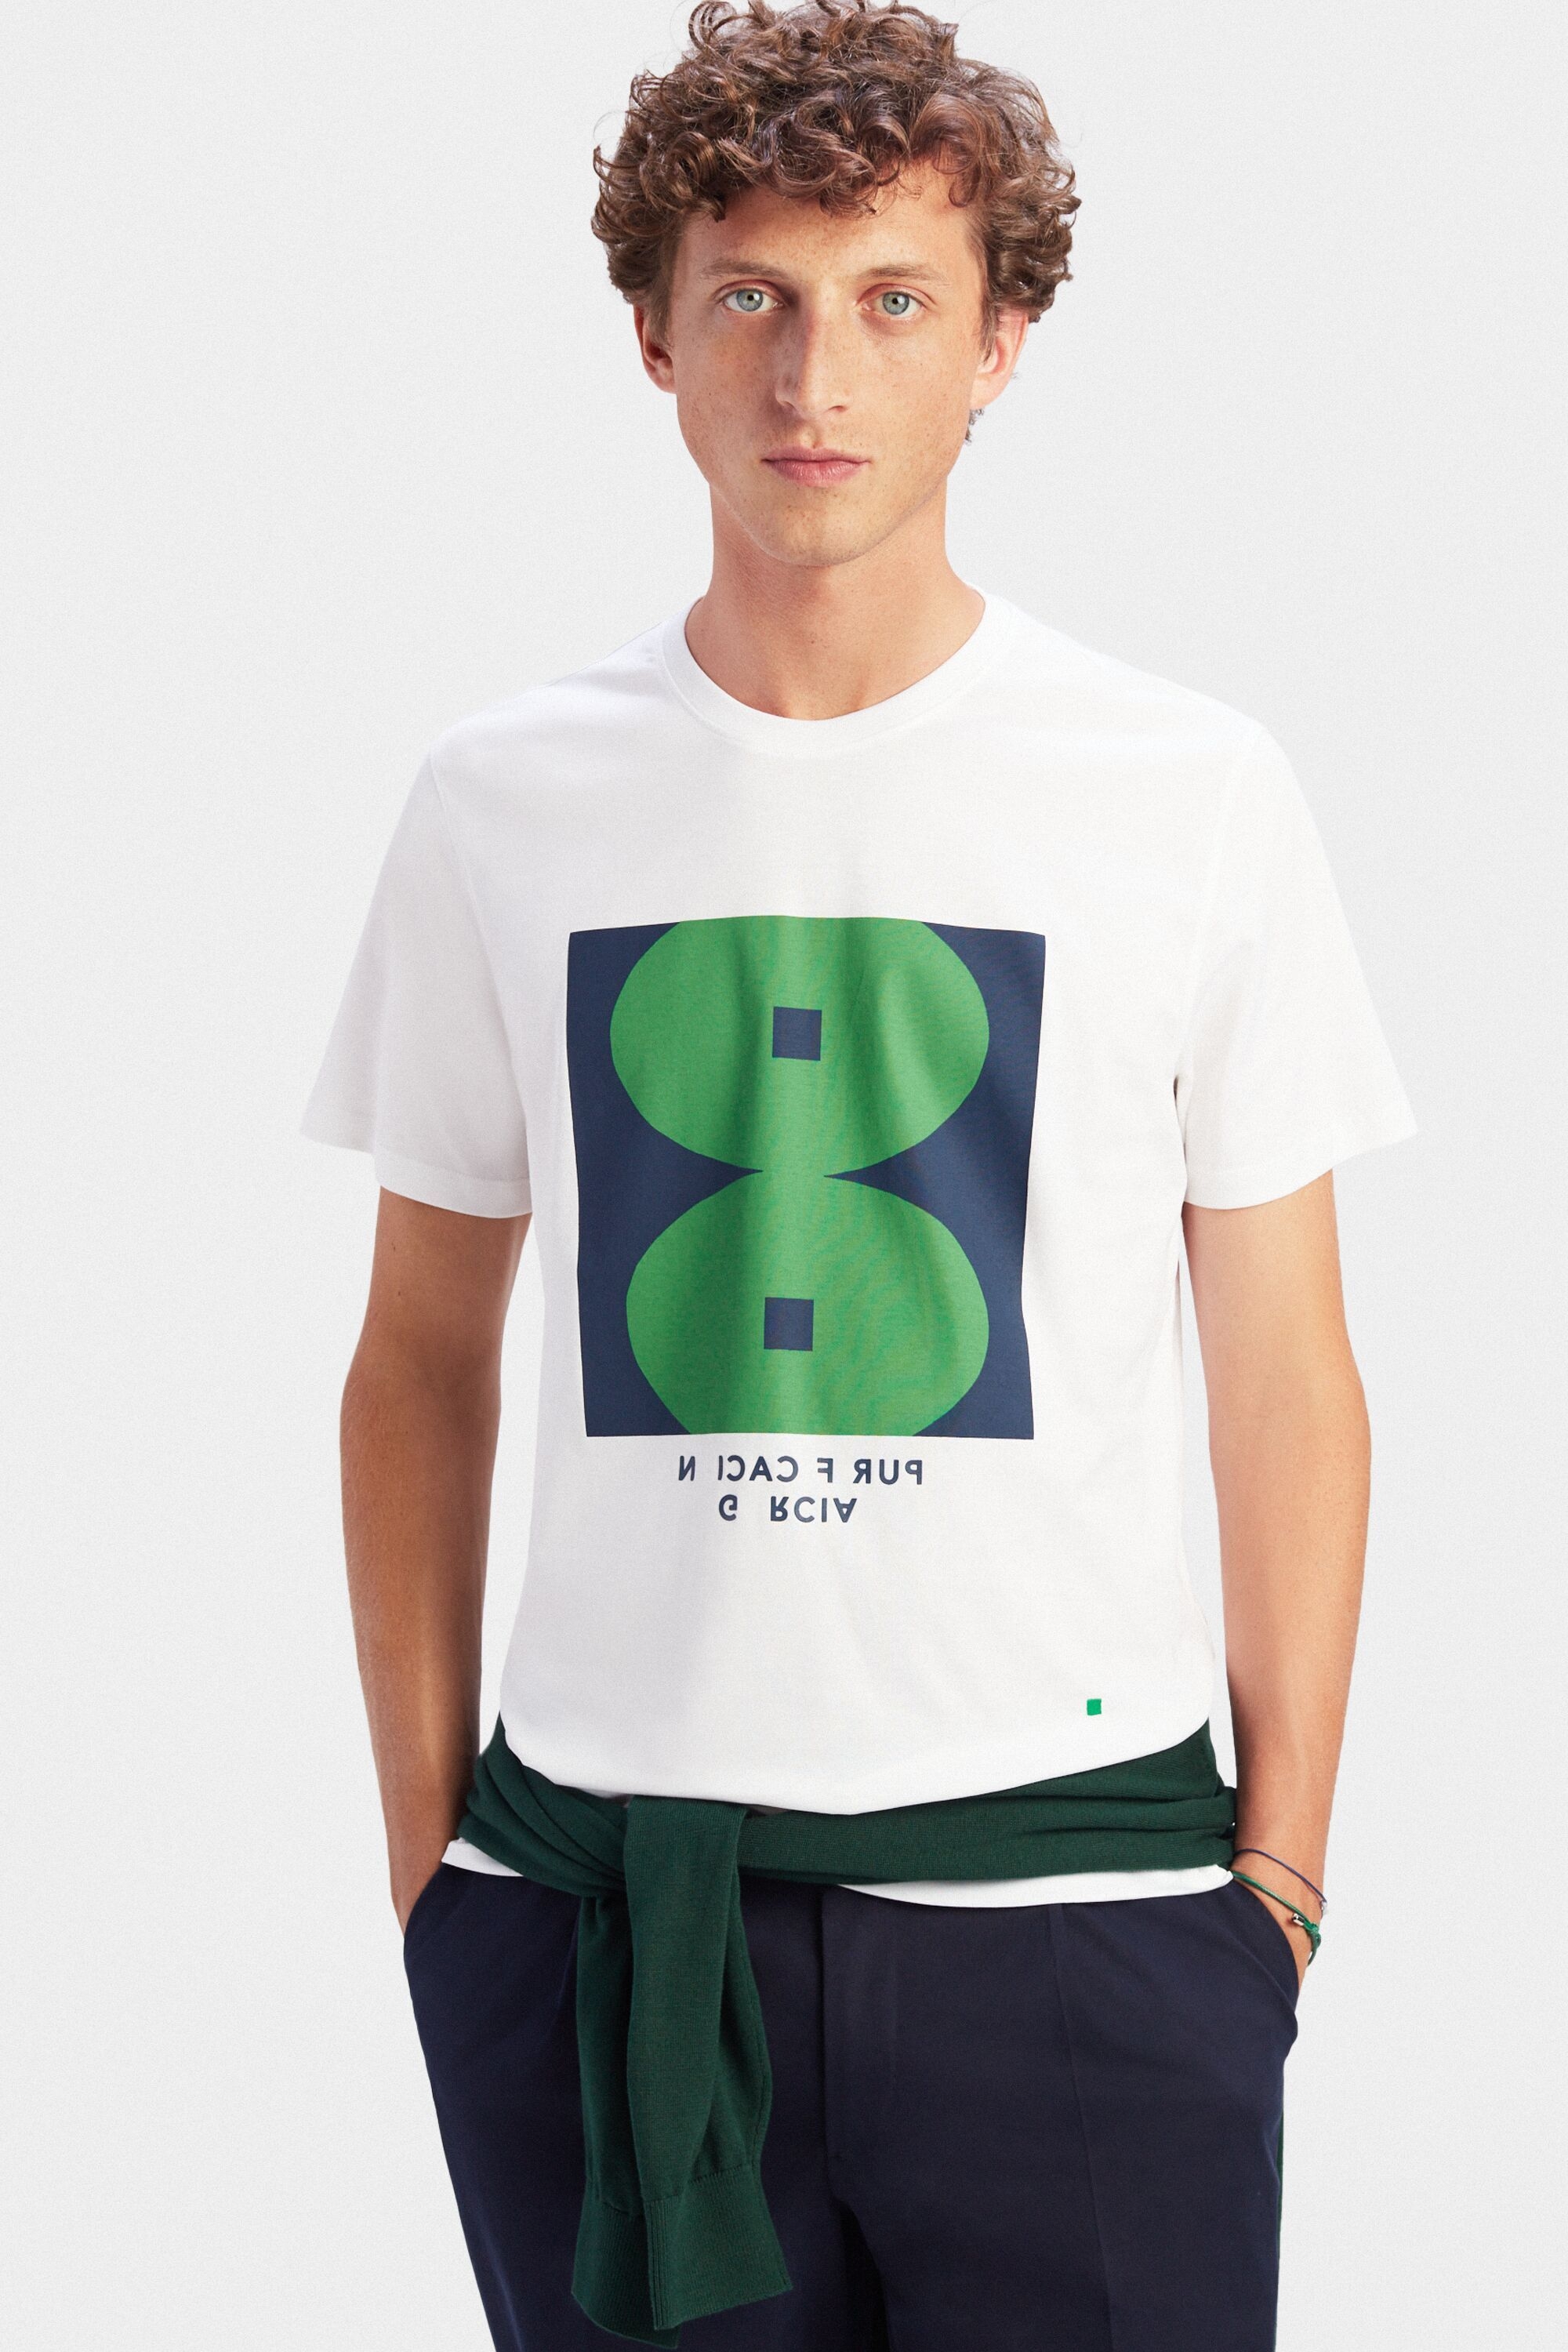 Ocho printed t-shirt